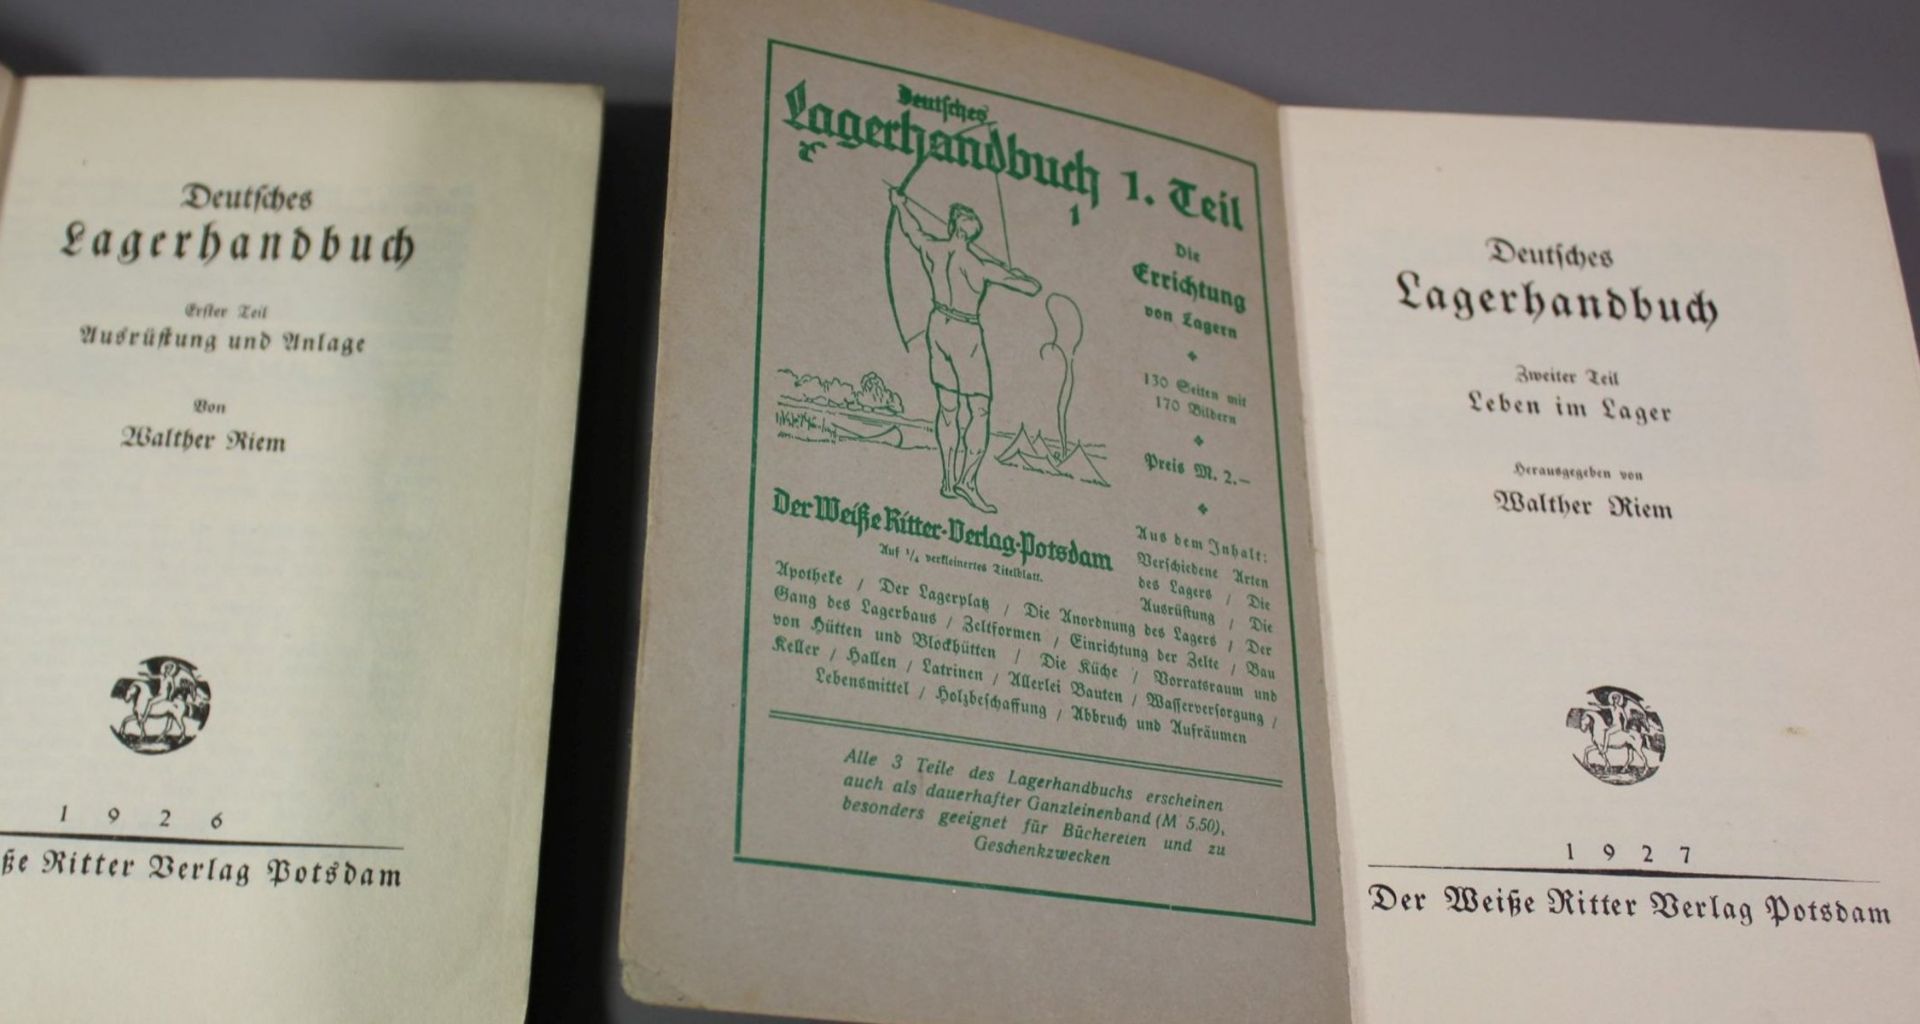 2 Bände, Deutsches Lagerhandbuch, 1926/27, Der weisse Ritter Verlag Potsdam, Paperback. - Image 2 of 4